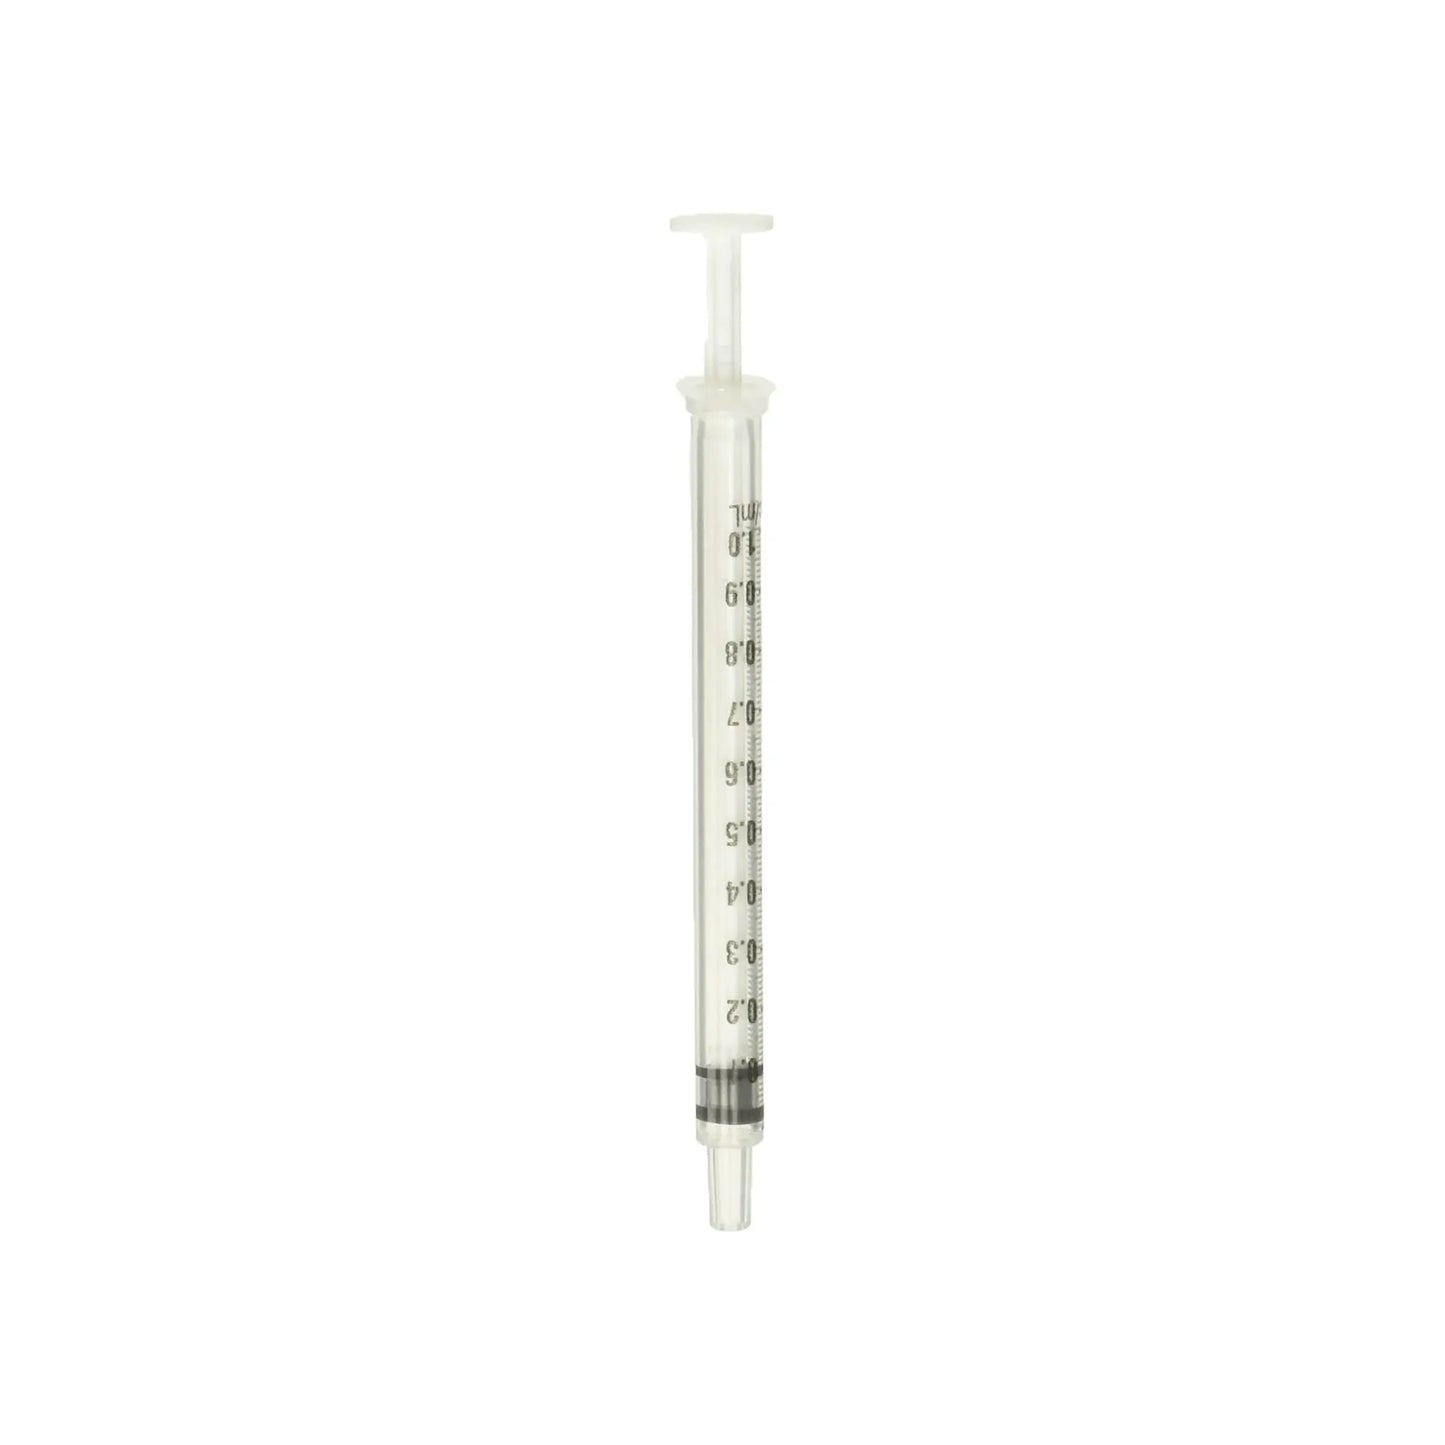 Terumo 1ml Disposable 20 Syringes